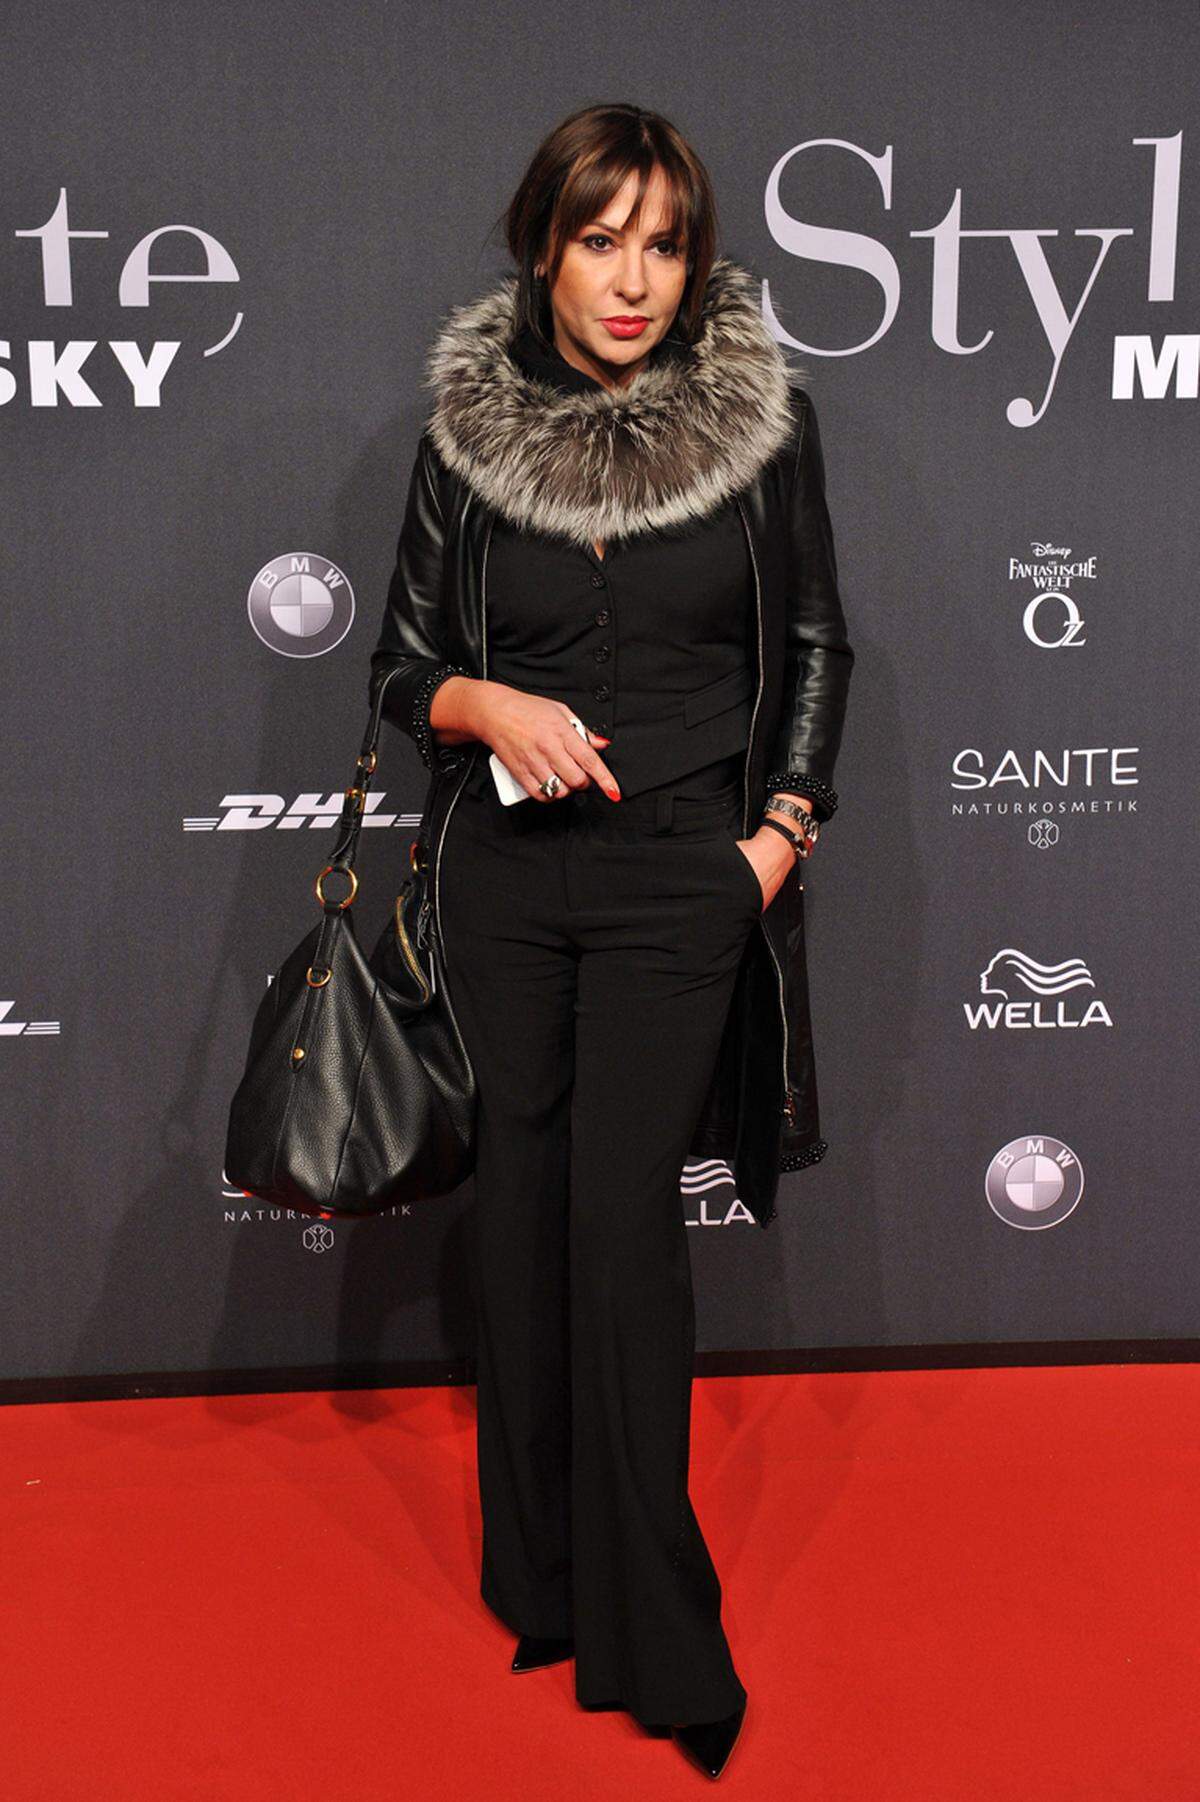 Schauspielerin Simone Thomalla zeigte sich den Fotografen auf dem roten Teppich.